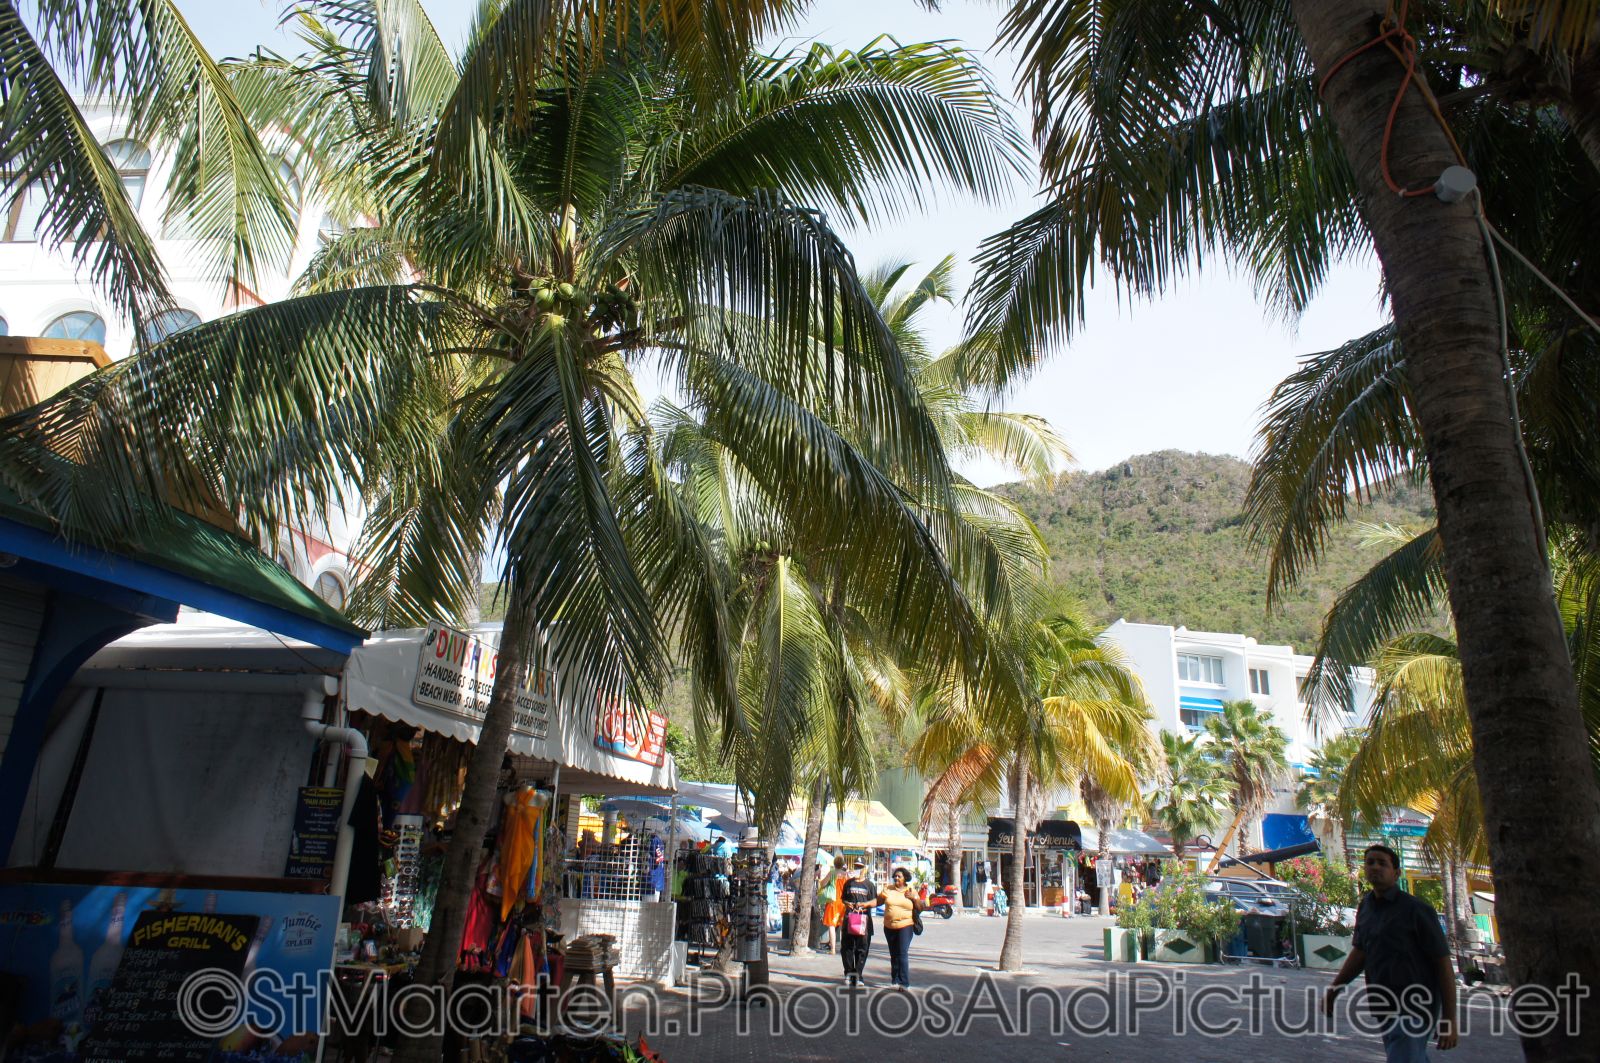 Street scene in downtown Philipsburg St Maarten.jpg
